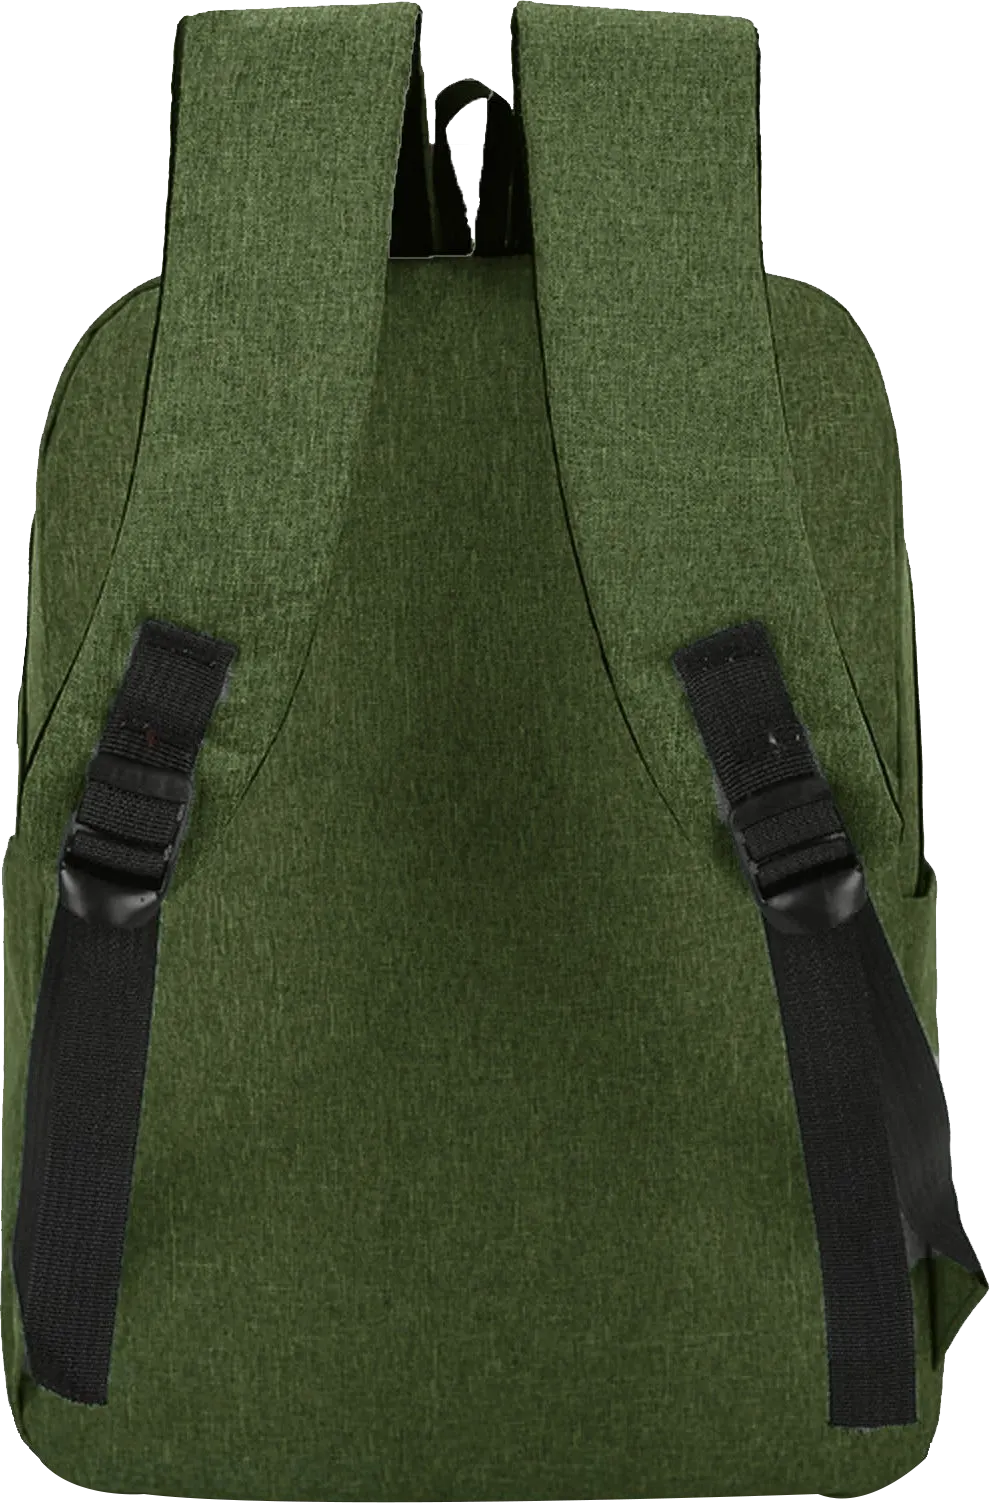 شنطة ظهر لاب توب كوجار، 15.6 بوصة، أخضر فاتح، S50